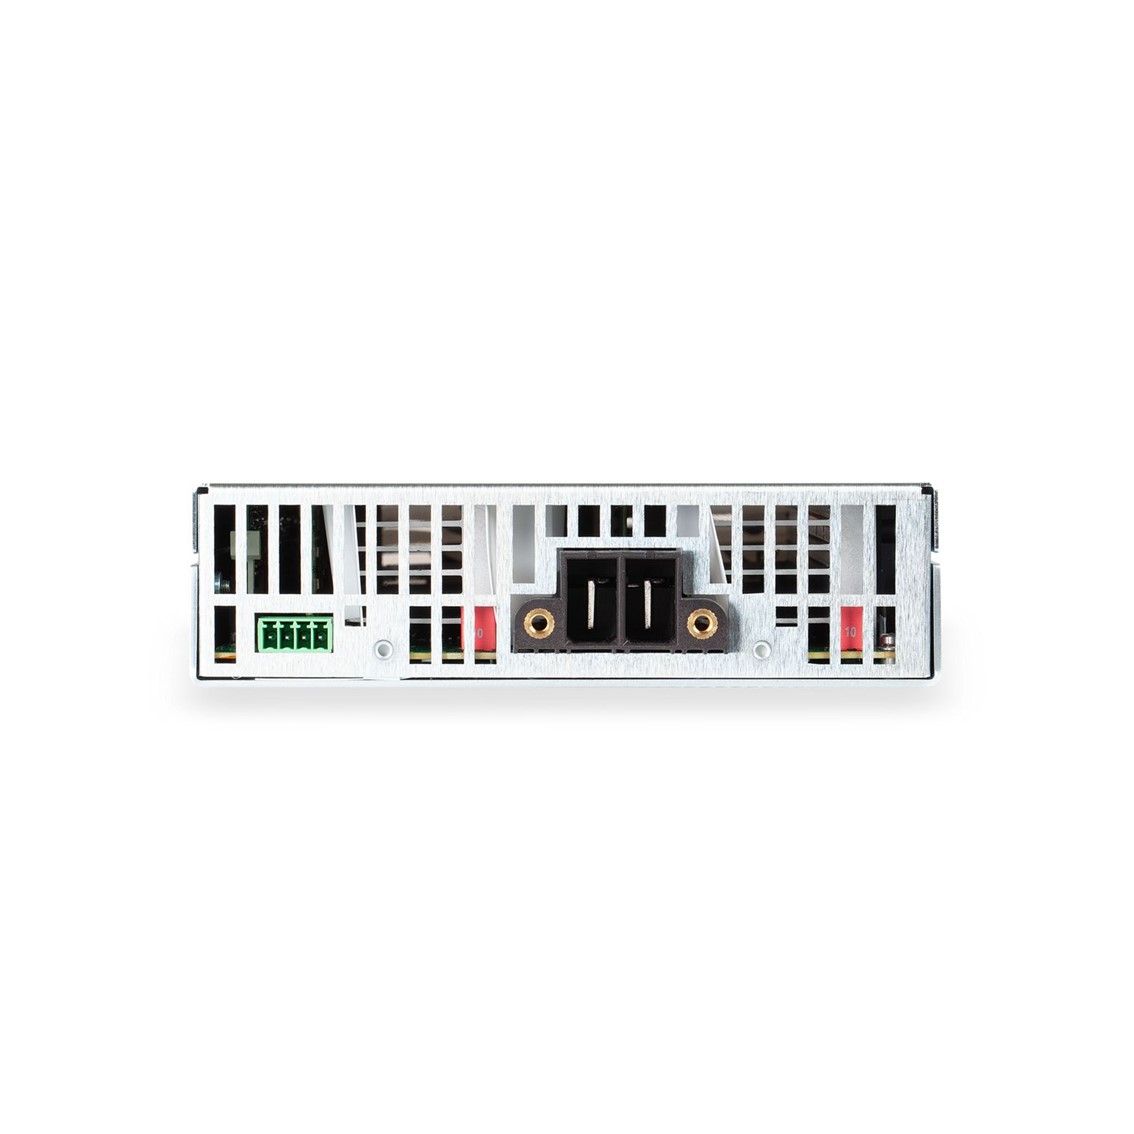 [ KEYSIGHT ] 키사이트 N6792A  모듈러 DC 전자 로드 모듈 60V/40A/200W Modular DC Electronic Load Module(1U)